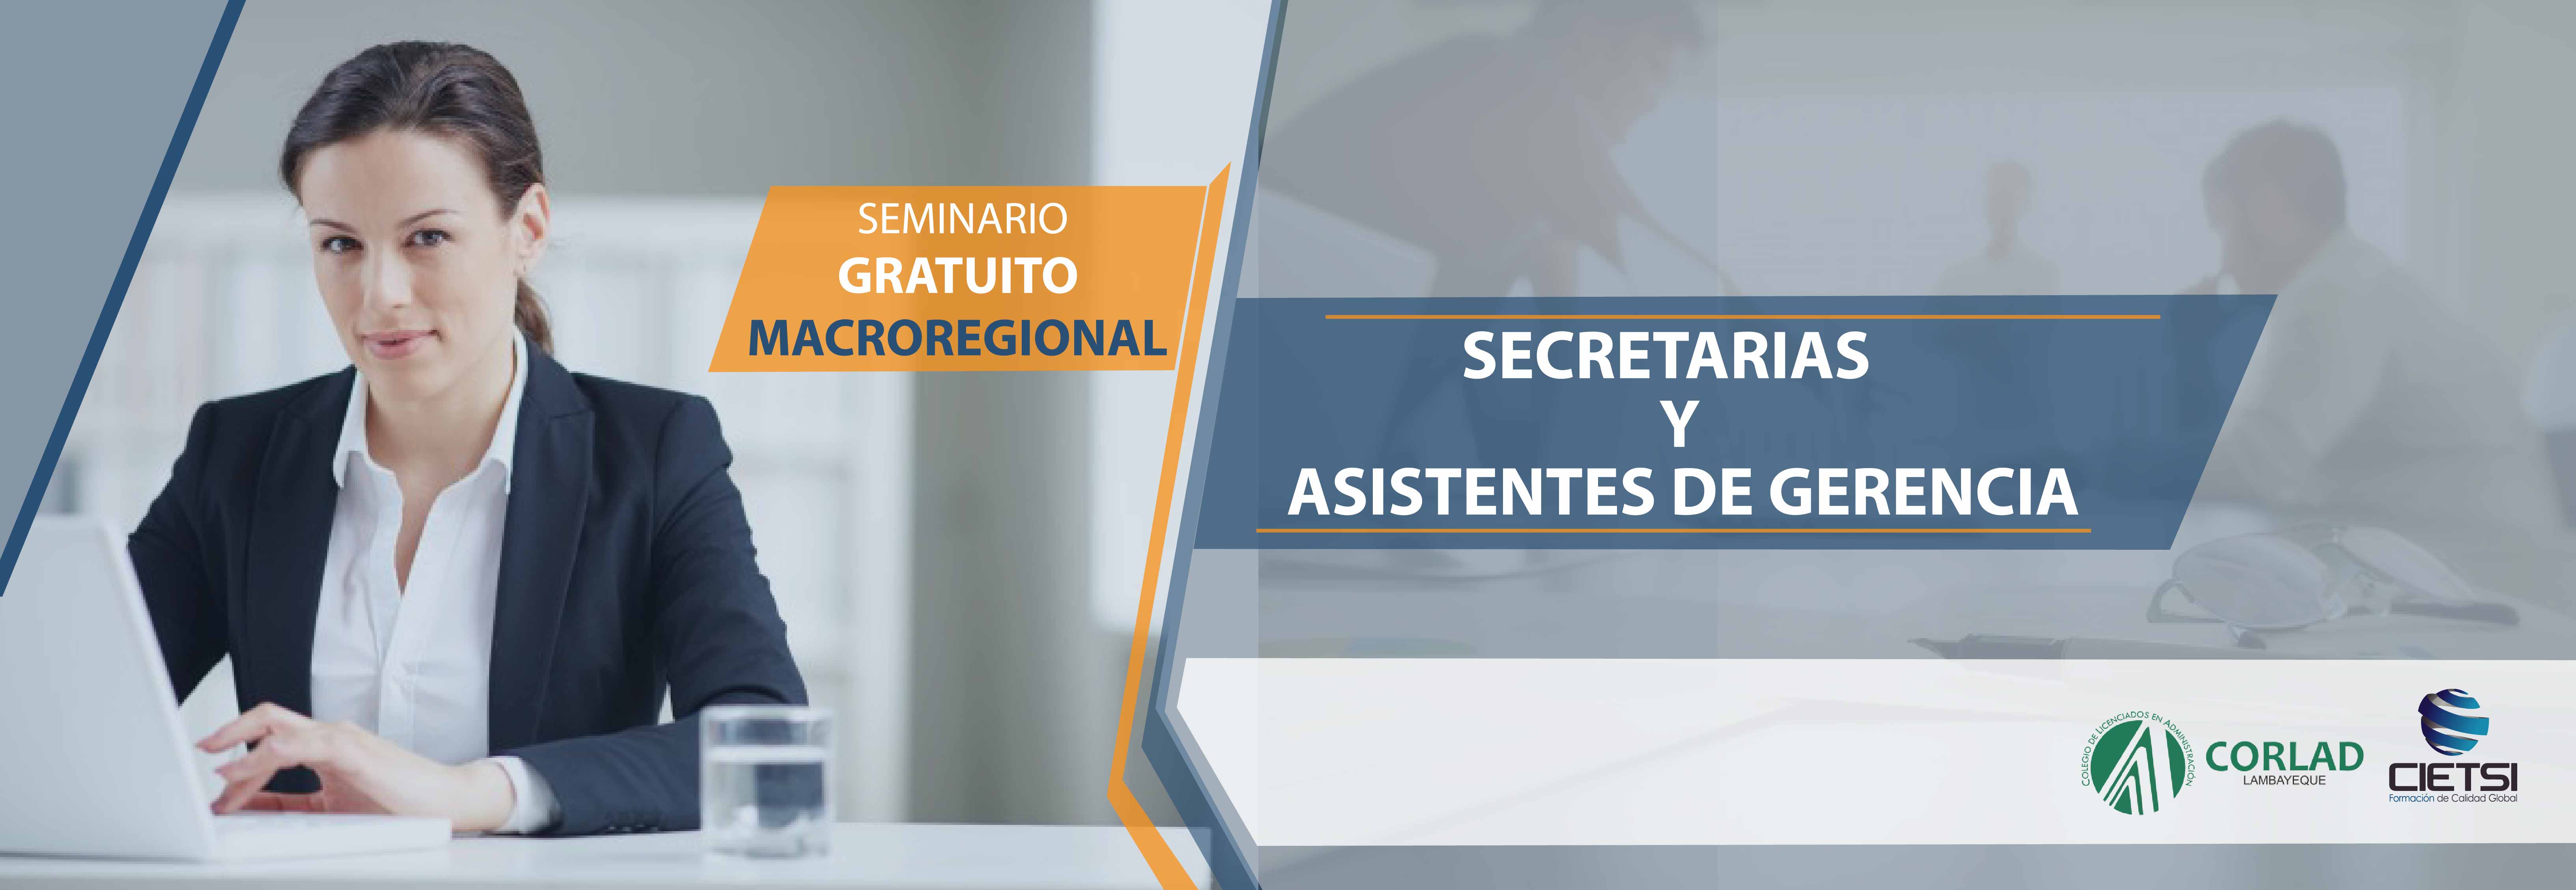 SEMINARIO MACROREGIONAL DE SECRETARIAS Y ASISTENTES DE GERENCIA 2017 